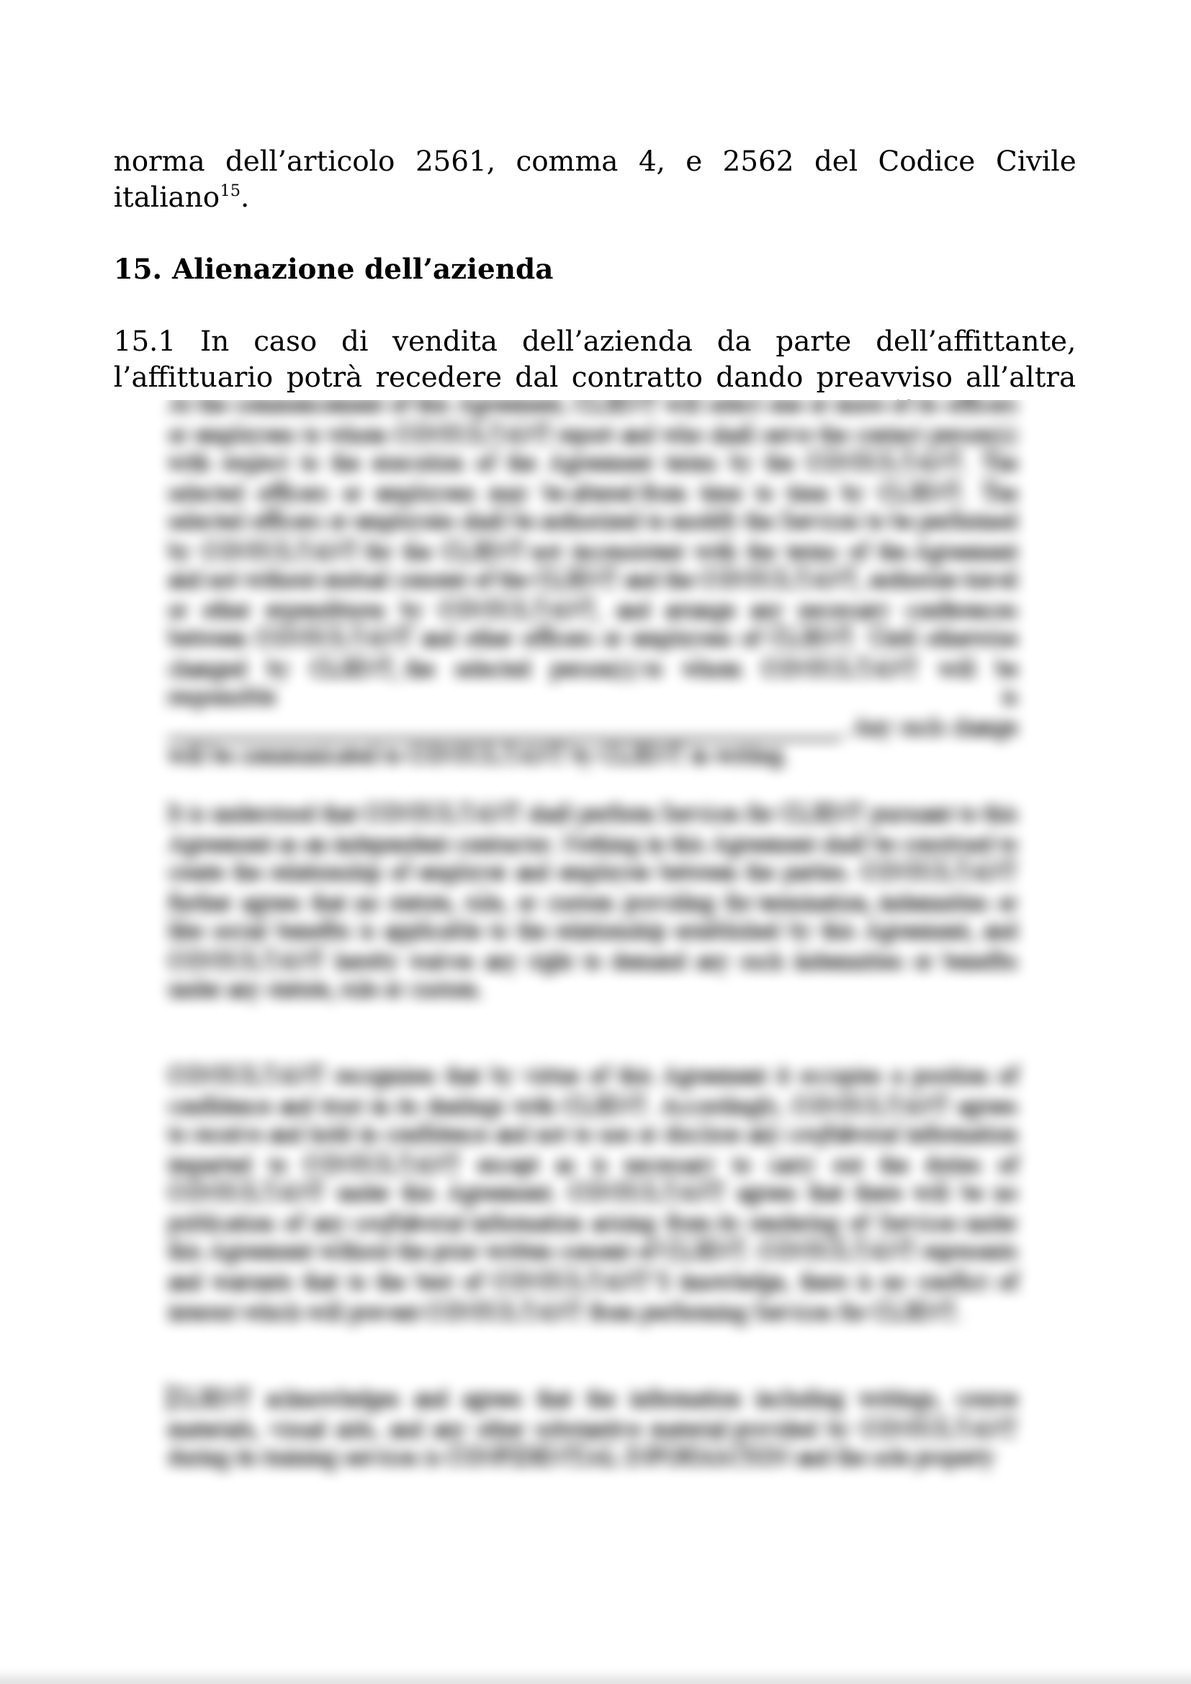 RENTAL AGREEMENT  FOR THE COMPANY AND BUSINESS UNITS / CONTRATTO DI AFFITTO DI AZIENDA O DI UN RAMO DI ESSA-6